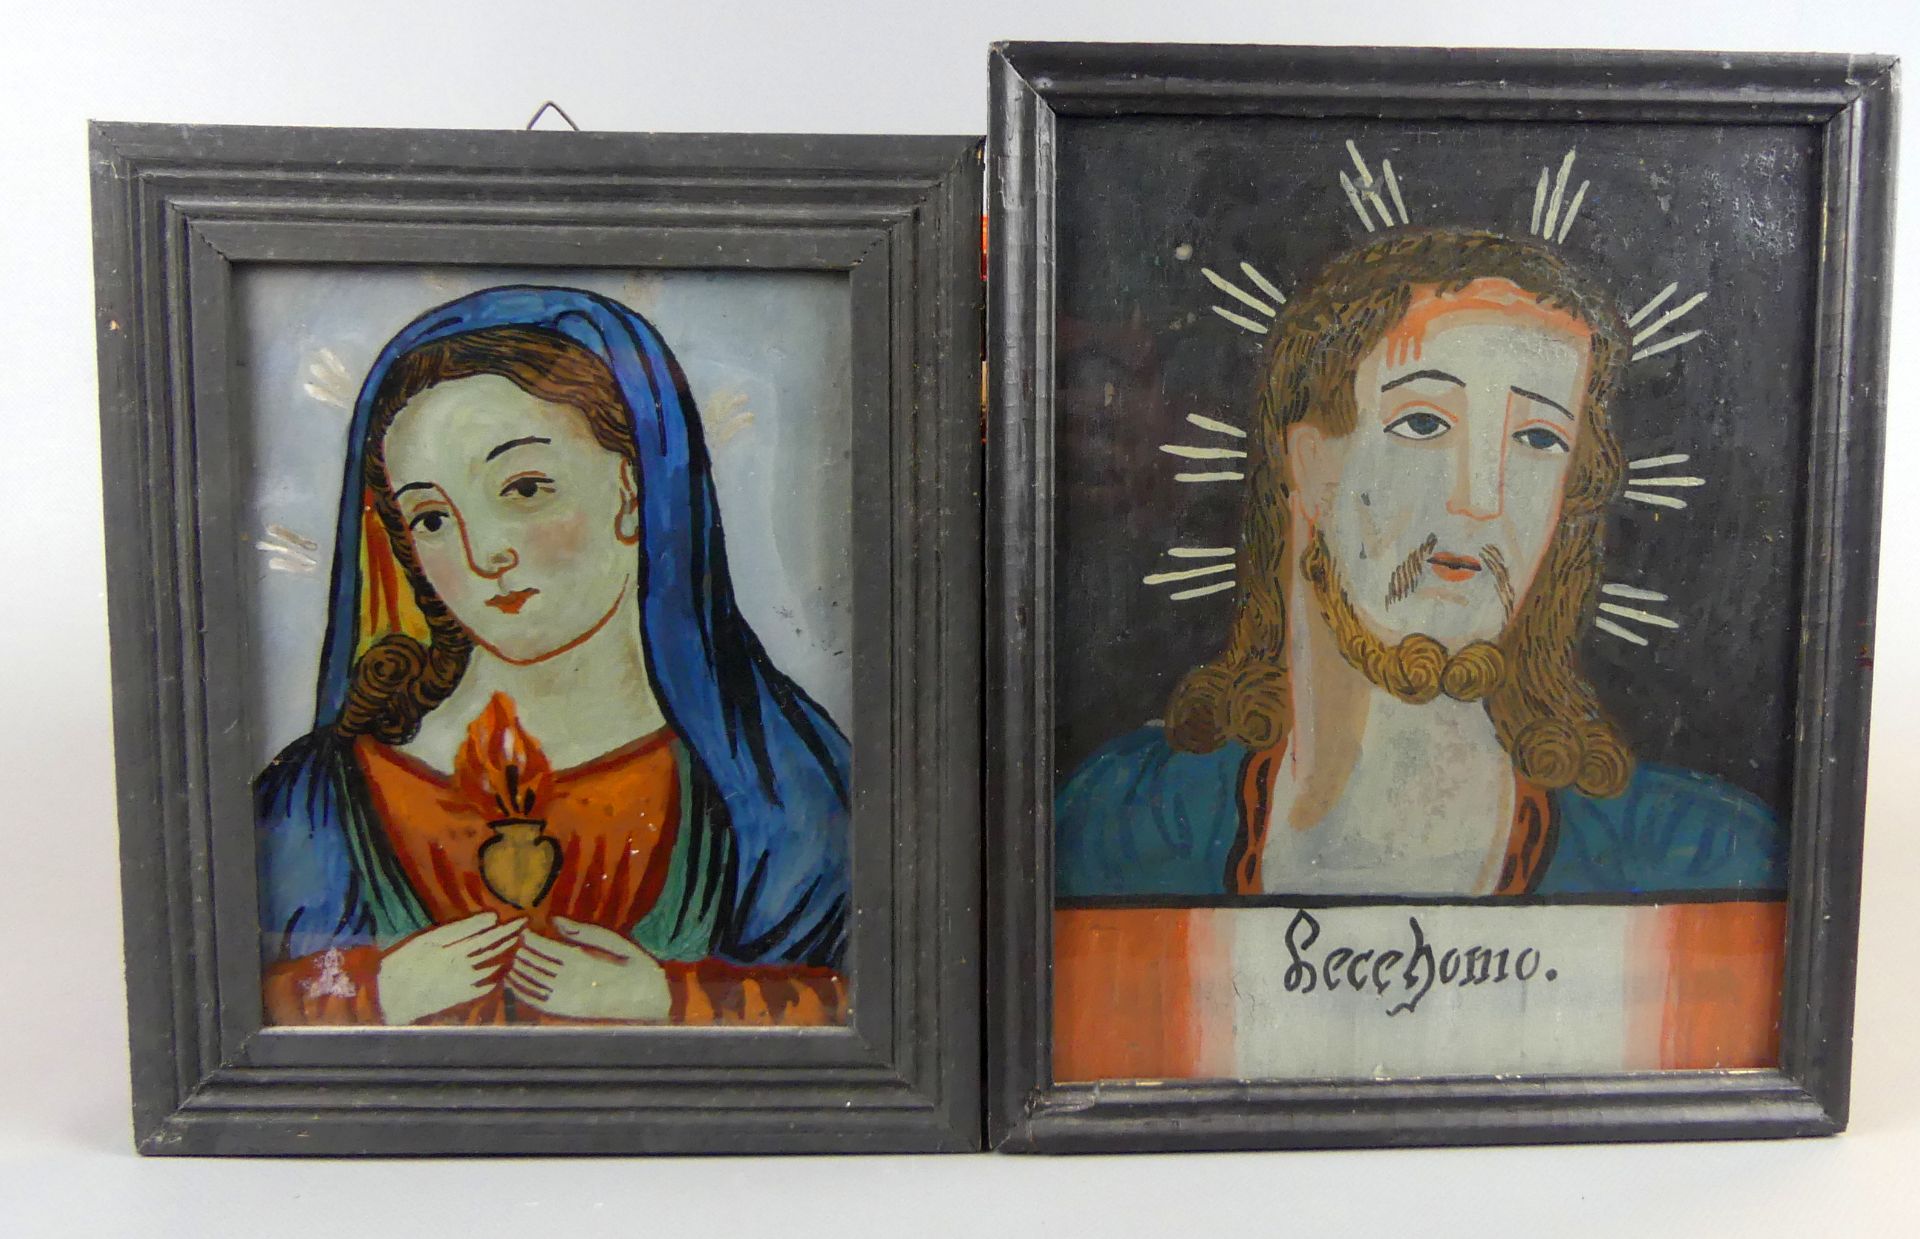 2 Hinterglasmalereien, "Herz Mariae", "Ecce homo", süddeutsch,